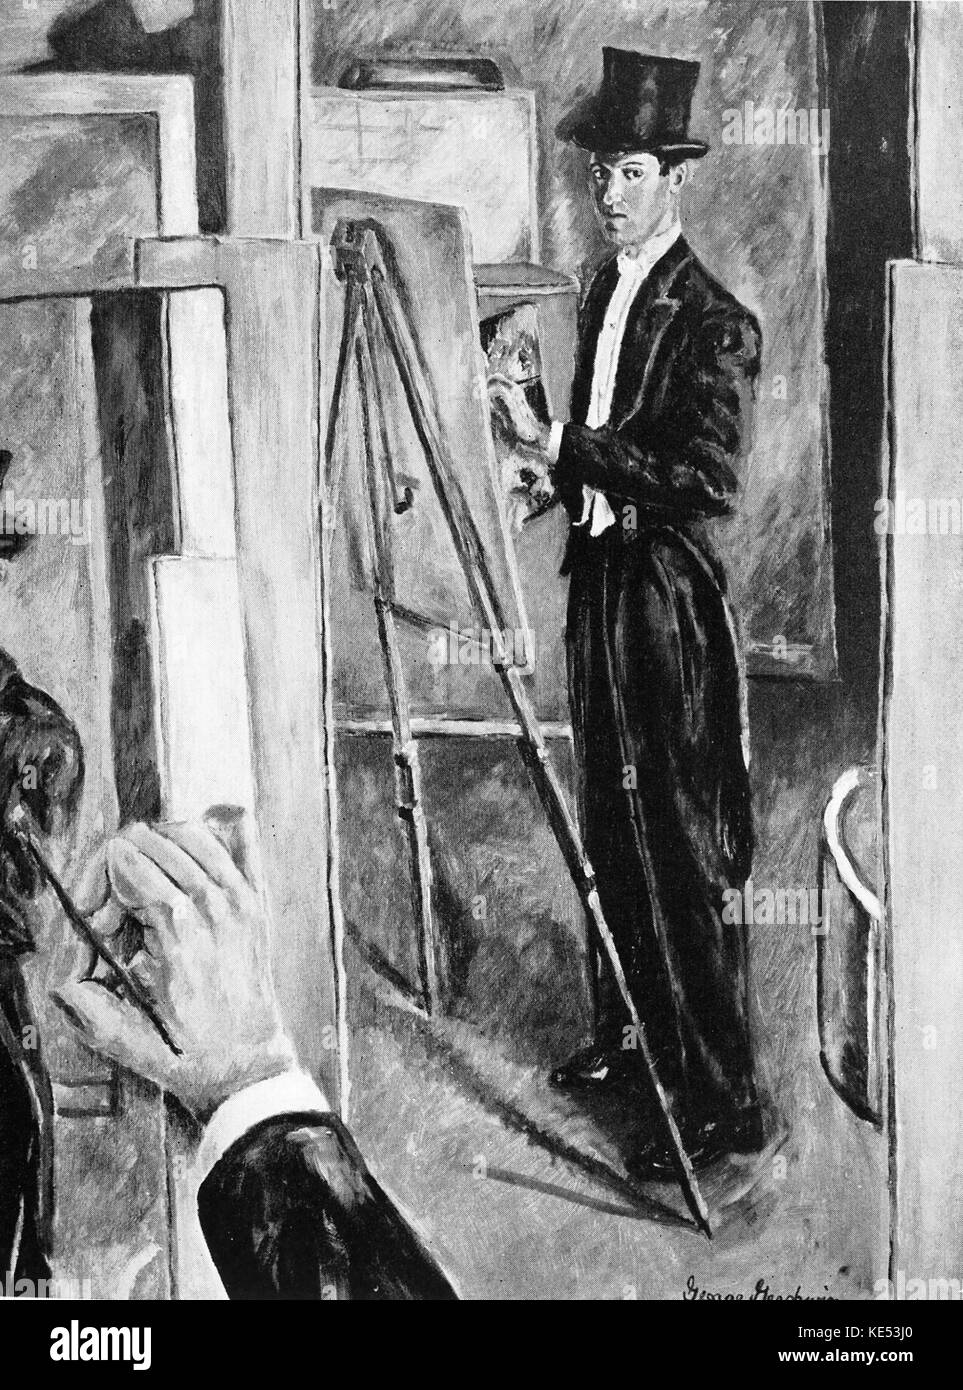 George Gershwin 's pintura de sí mismo en la ópera hat 1932. Pianista y compositor norteamericano, el 26 de septiembre de 1898 - 11 de julio de 1937 Foto de stock